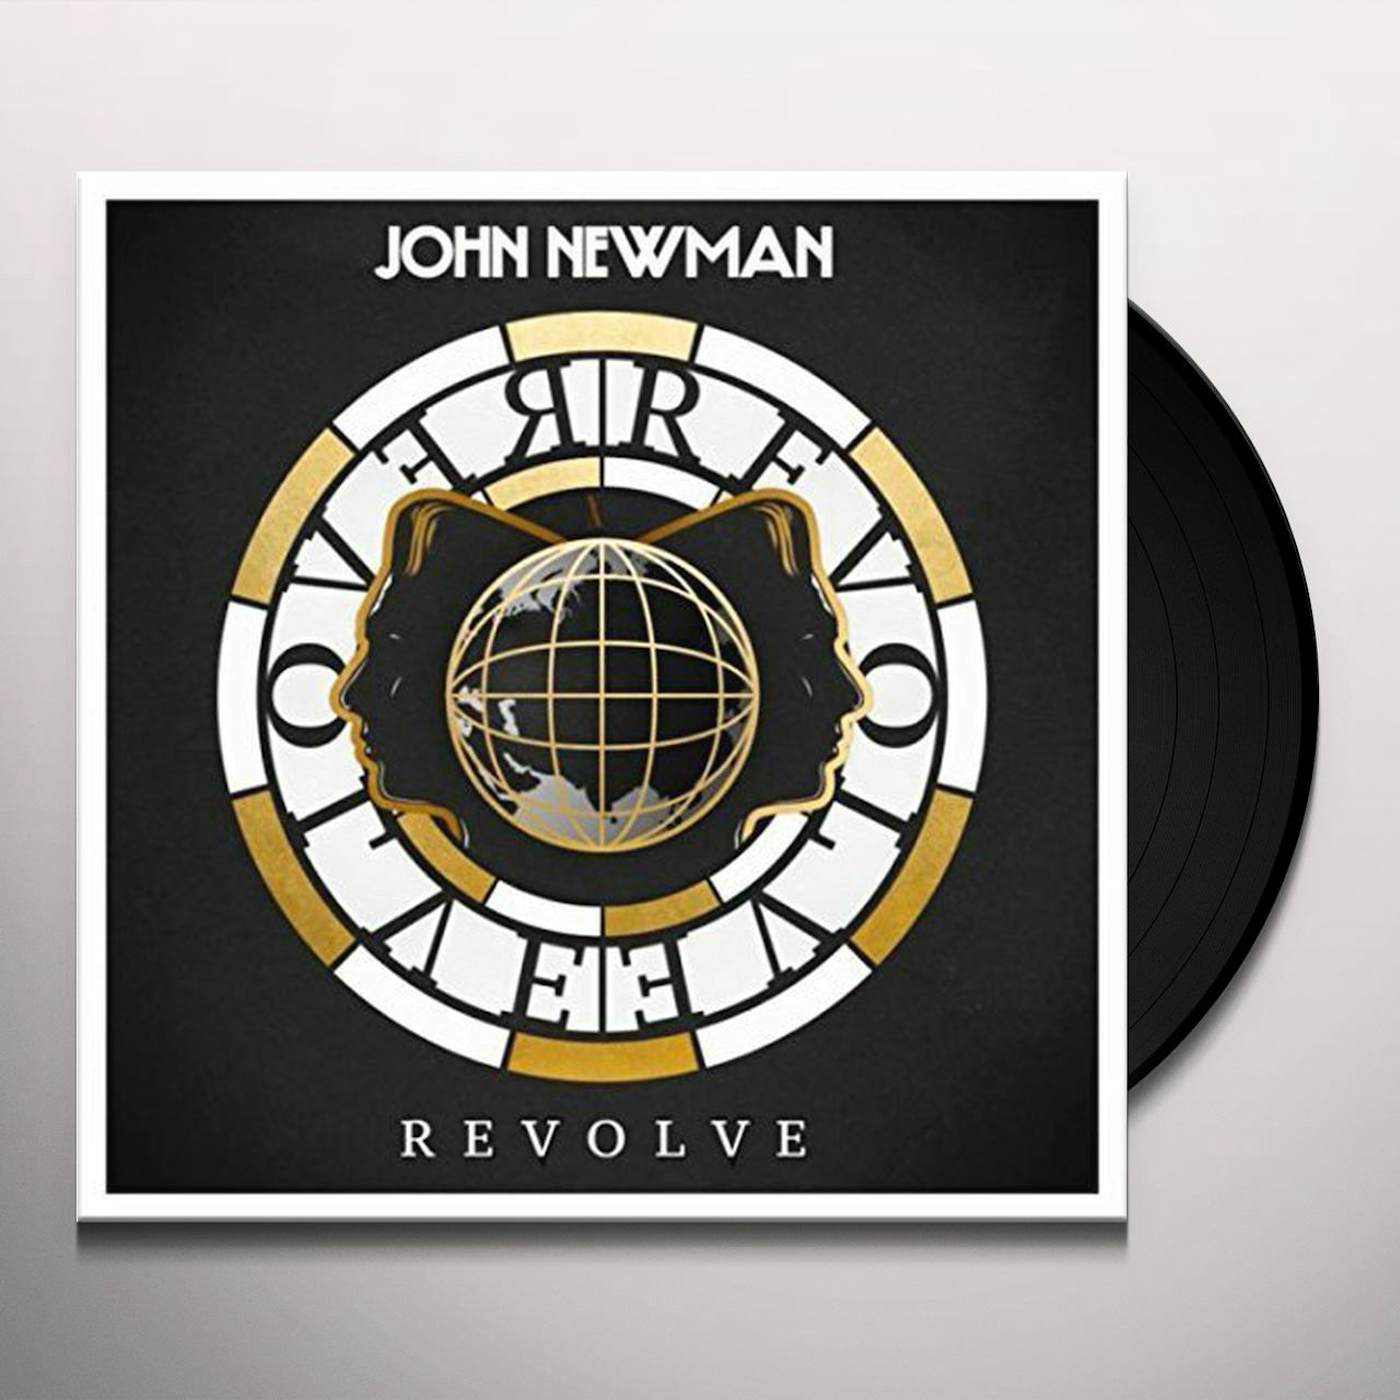 John John - New Man Store